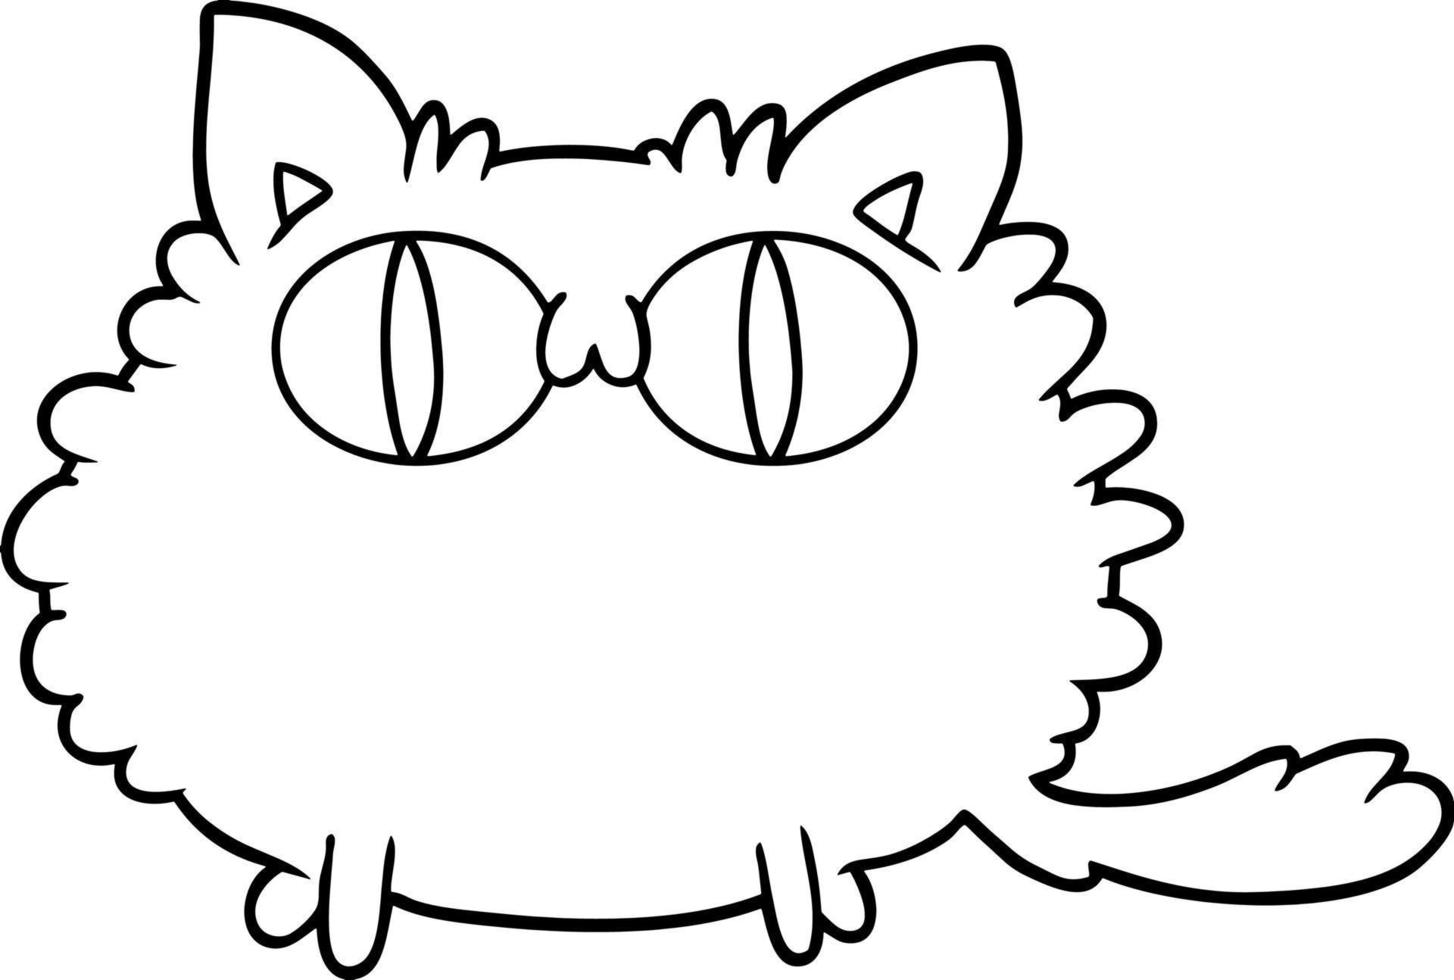 personagem de desenho animado gato vetor